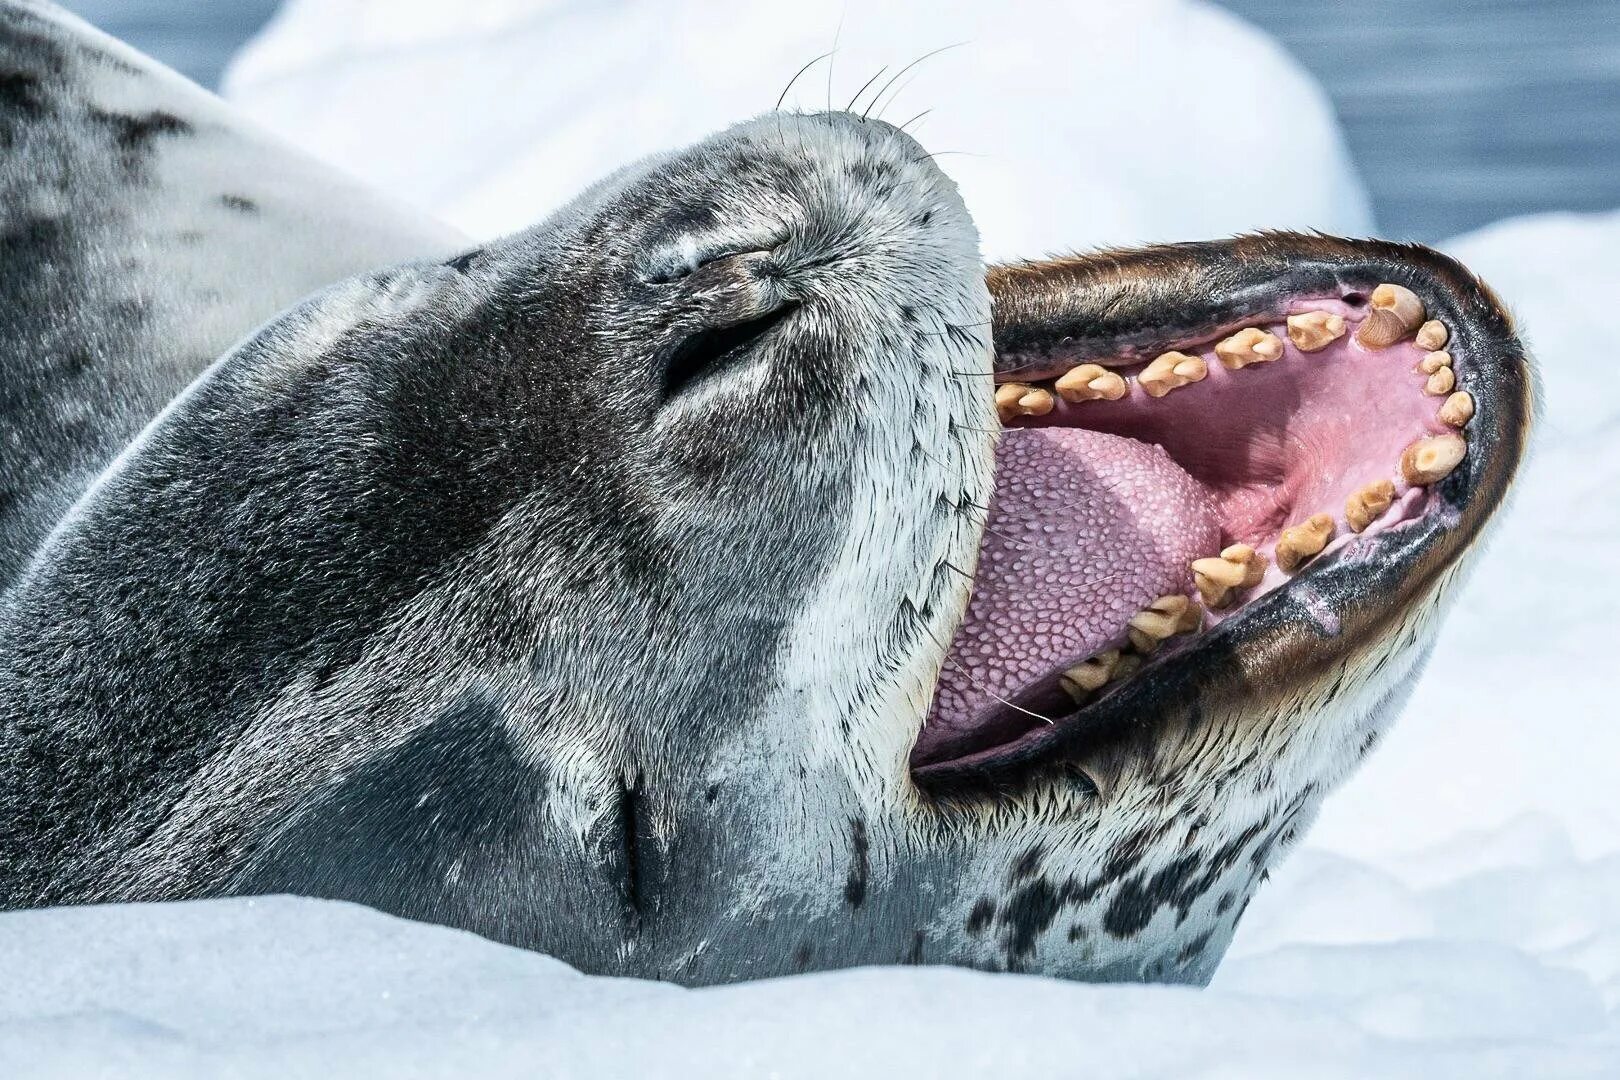 Фото морского леопарда. Морской леопард. Морской леопард в Антарктиде. Морской леопард Северный Ледовитый океан. Морской леопард и тюлень.